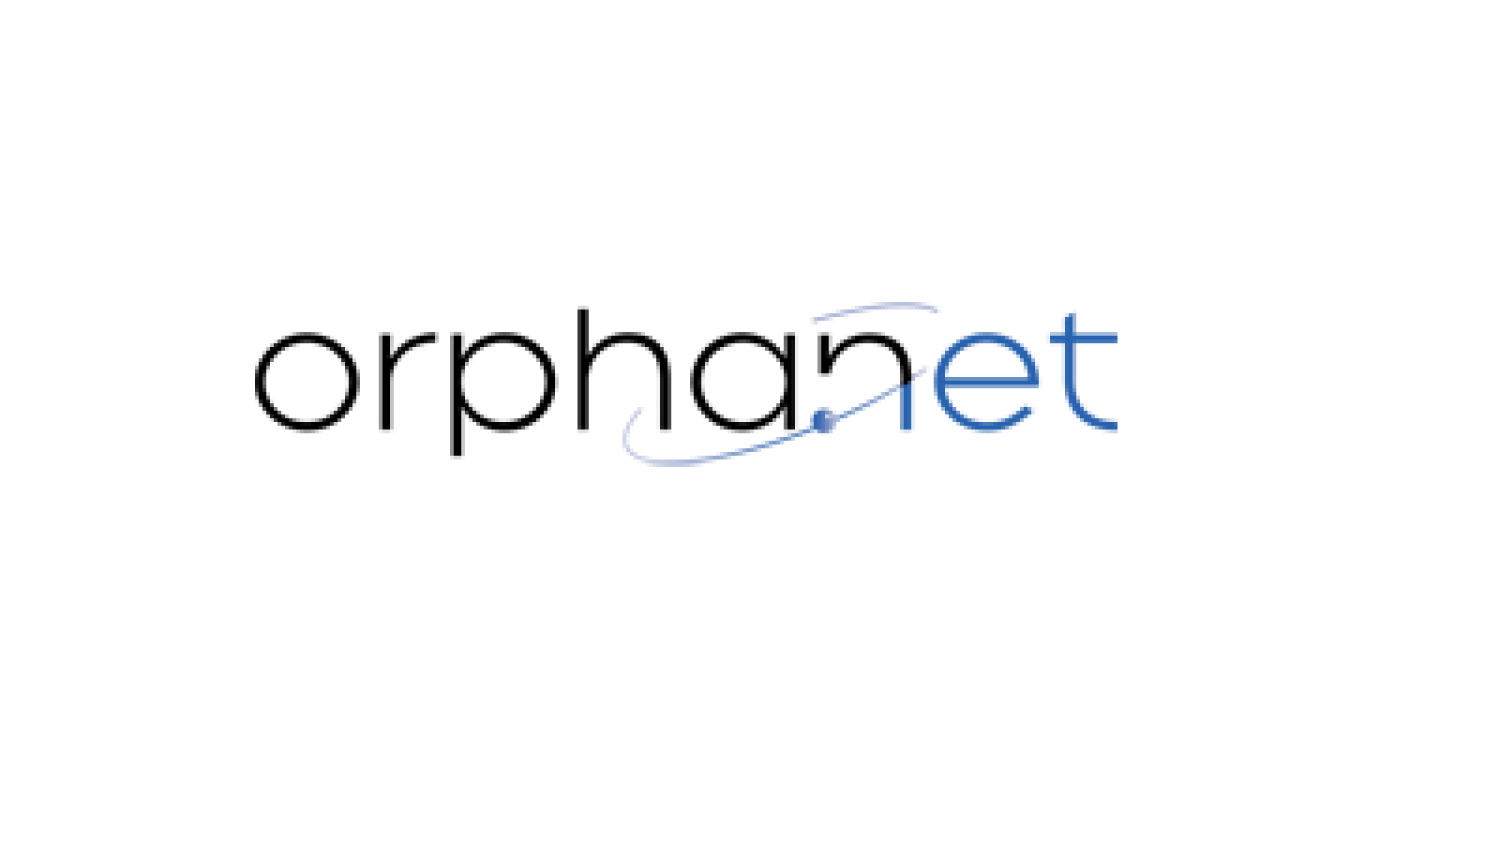 Orphanet logo